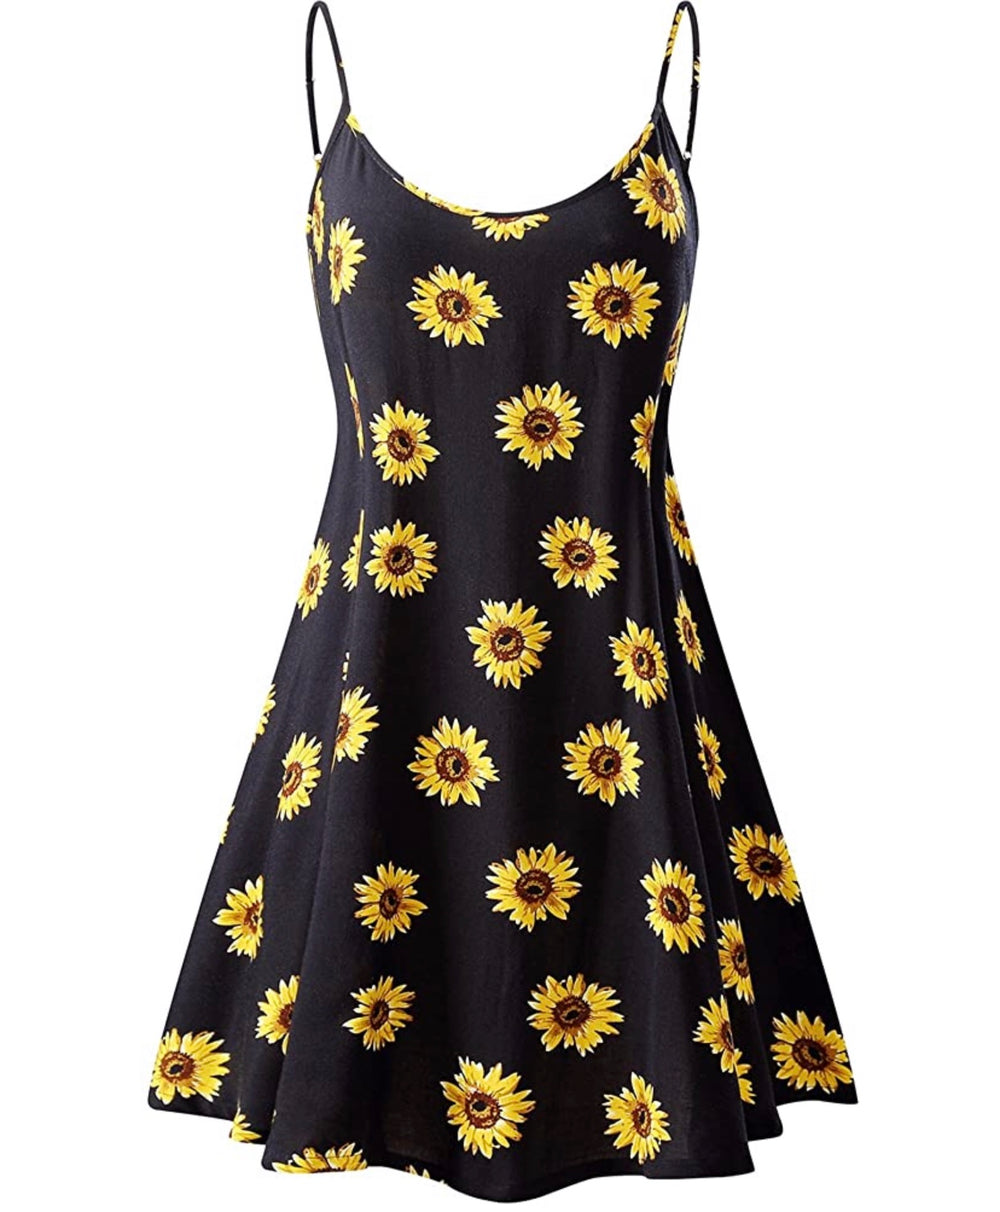 Sunflower Sundress (Black)